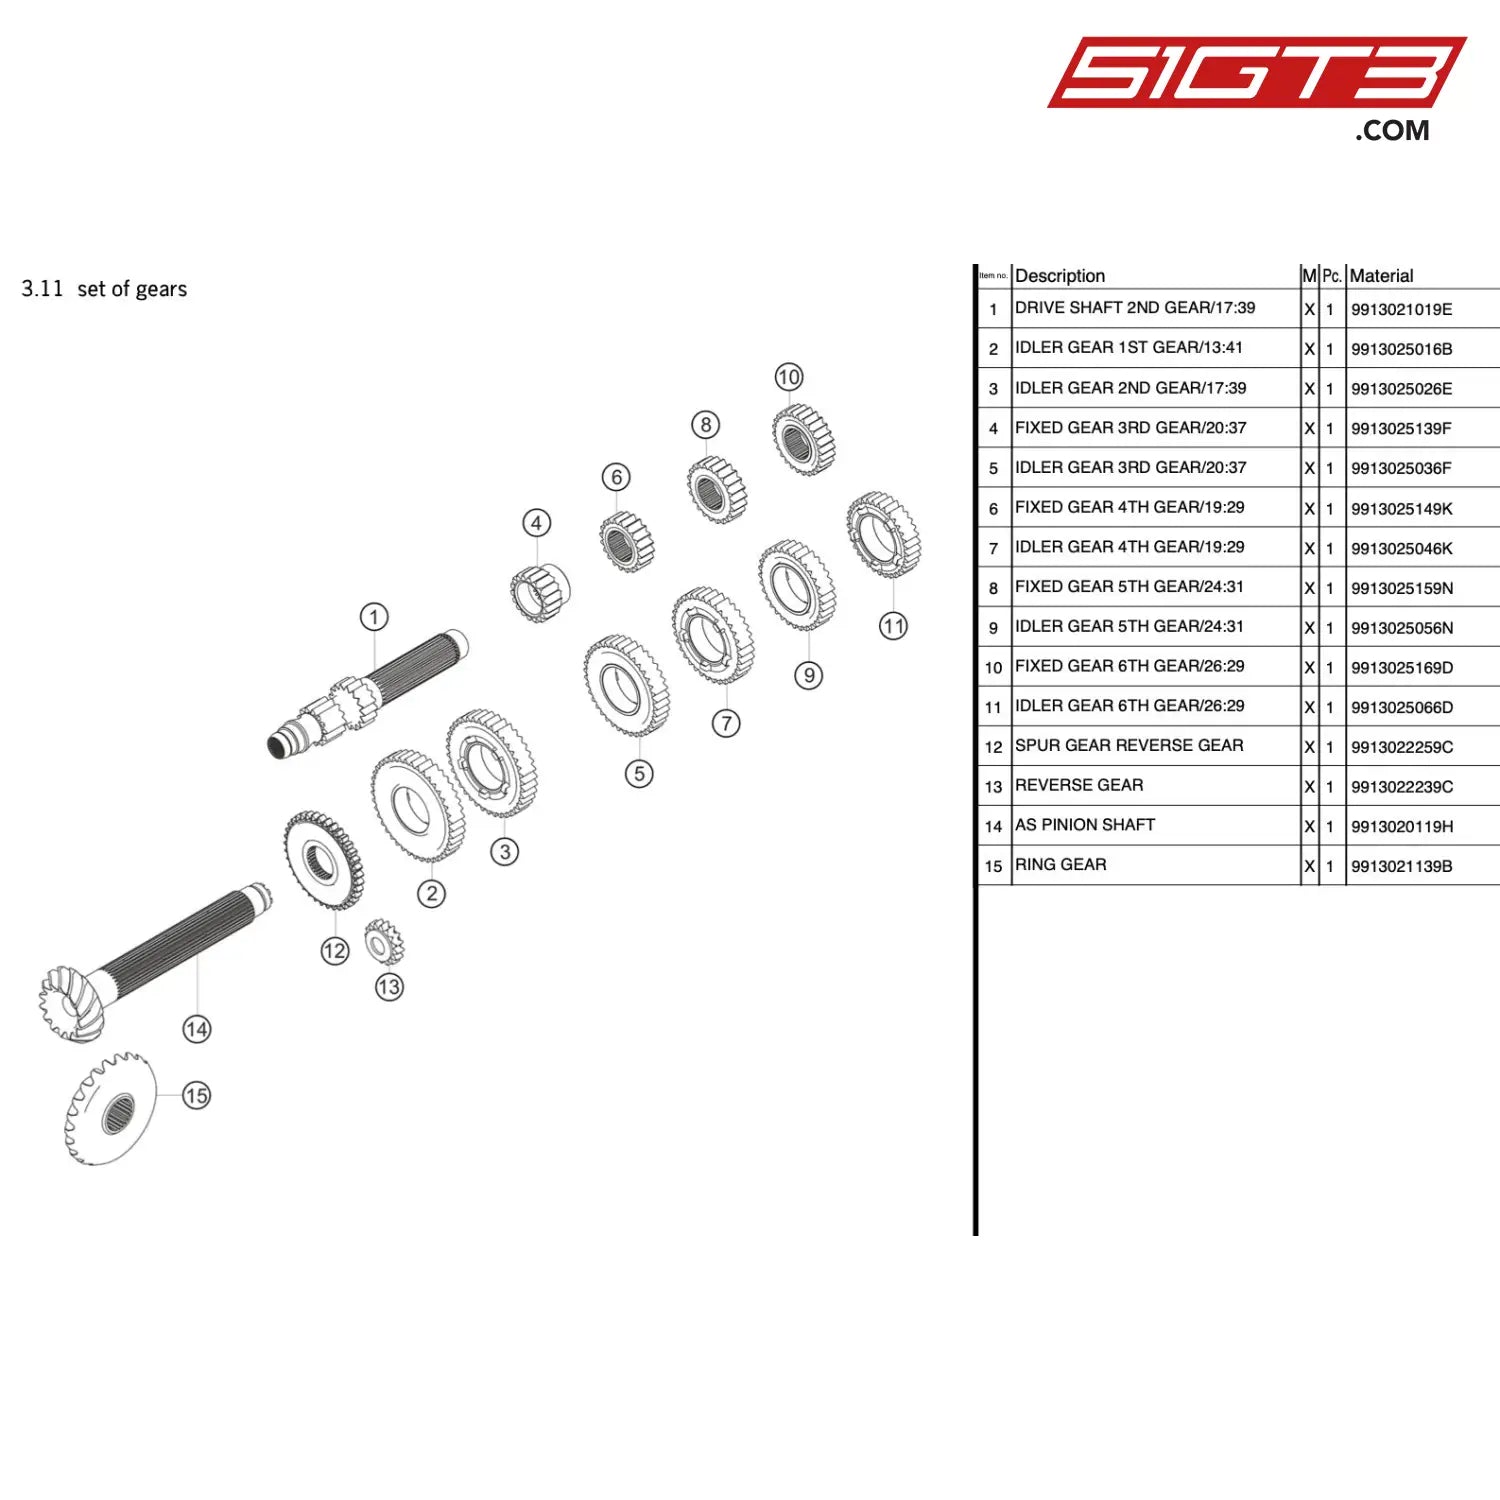 Idler Gear 5Th Gear/24:31 - 9913025056N [Porsche 911 Gt3 R Type 991 (Gen 1)] Set Of Gears